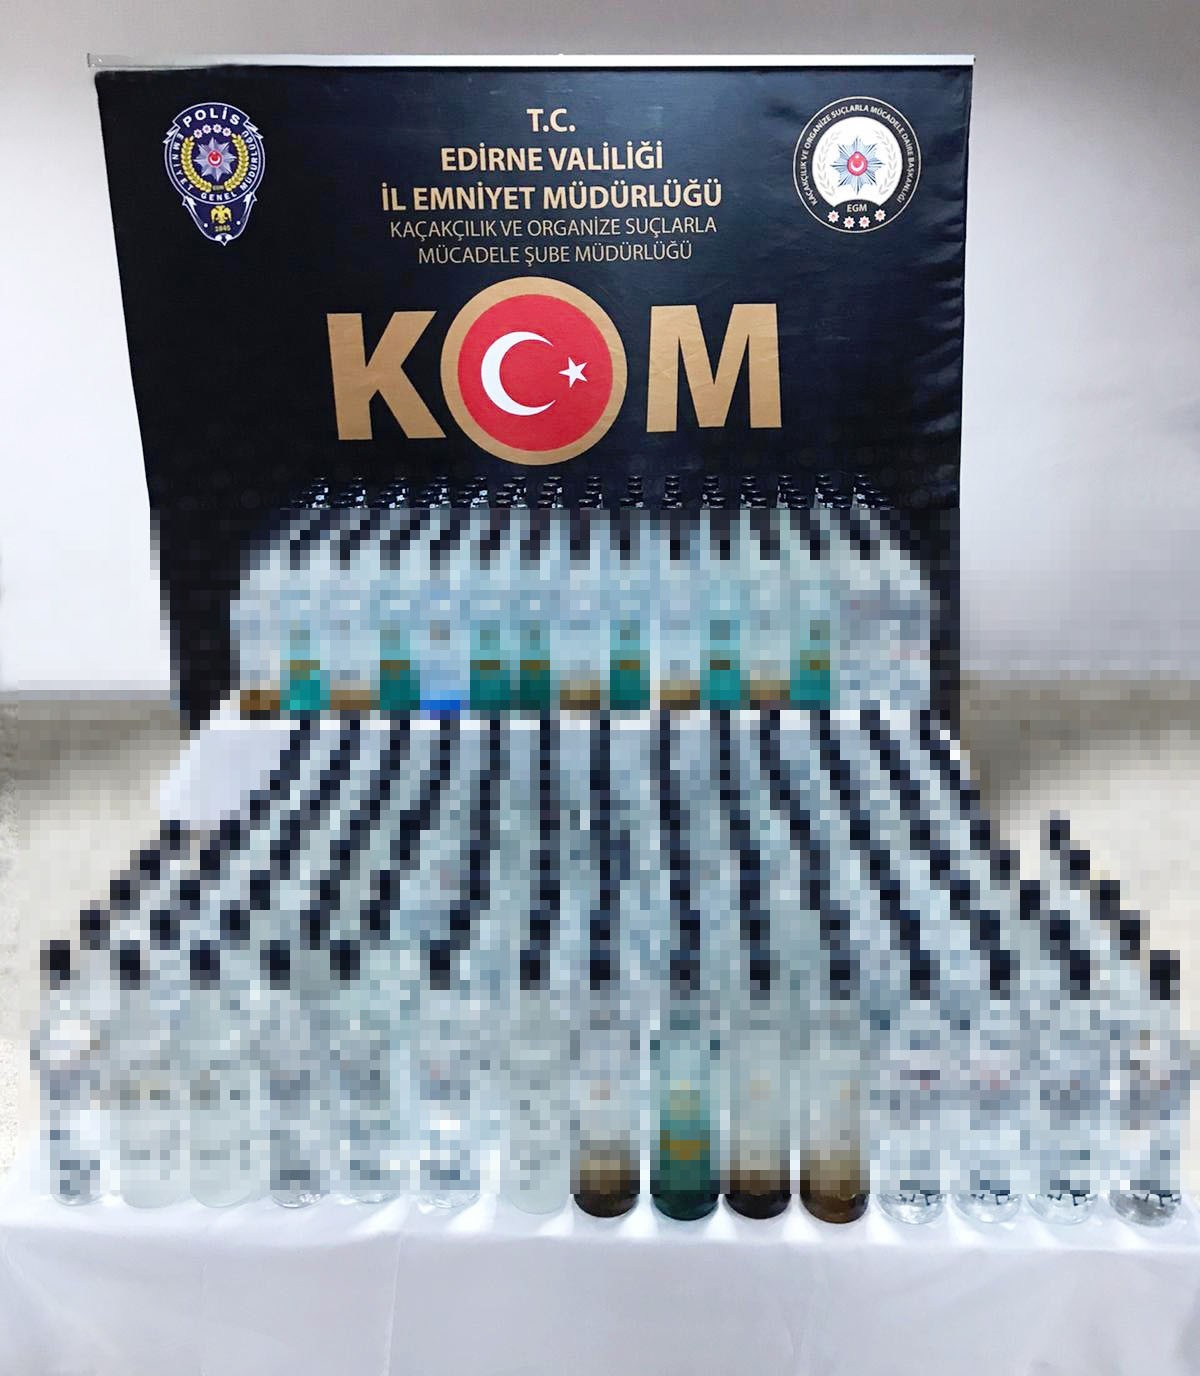 Edirne’de durdurulan otomobilde 260 şişe kaçak içki yakalandı #edirne